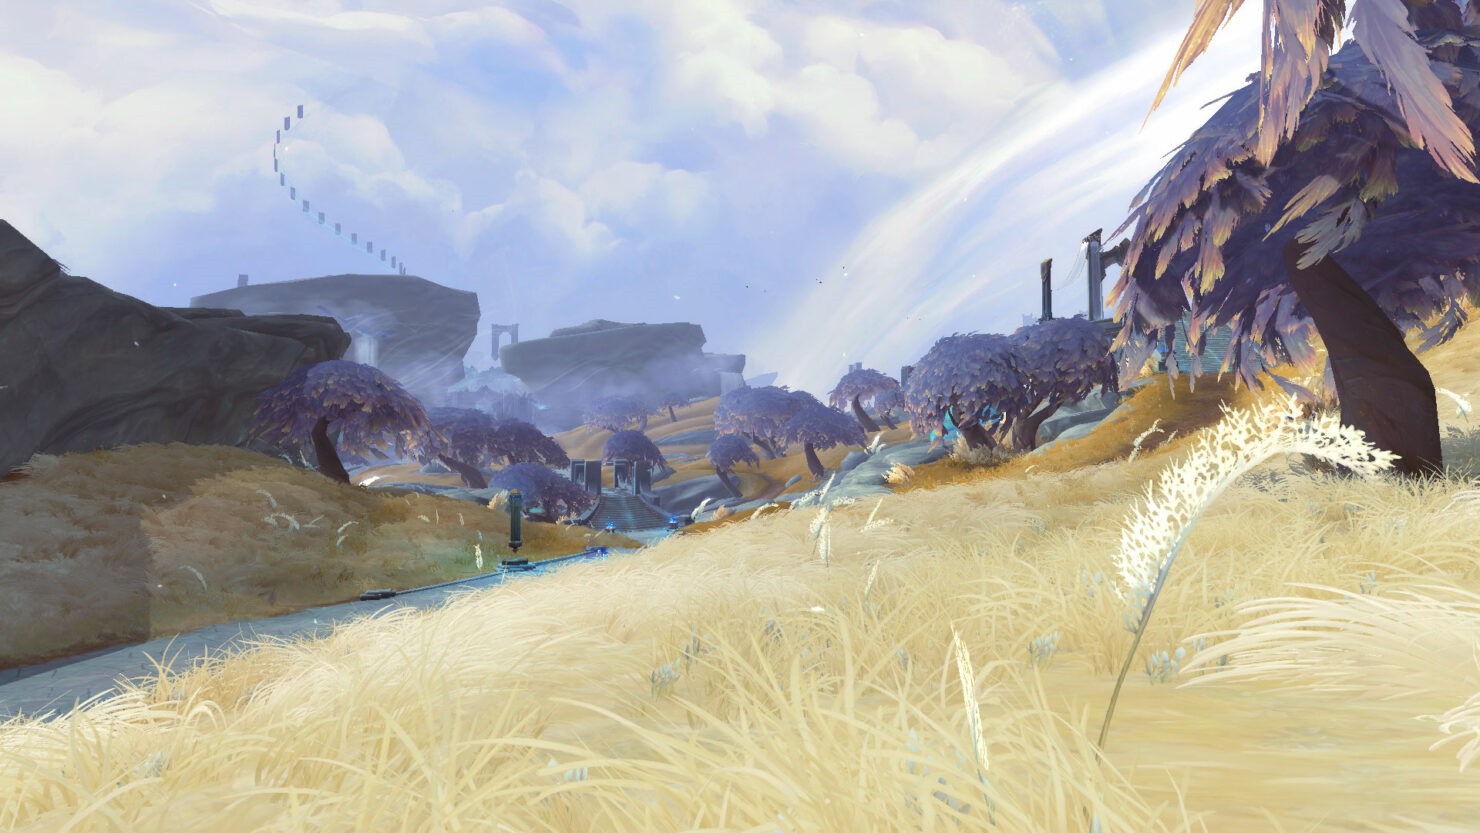 《魔兽世界》9.0版新截图公布 全新地图和操作体验